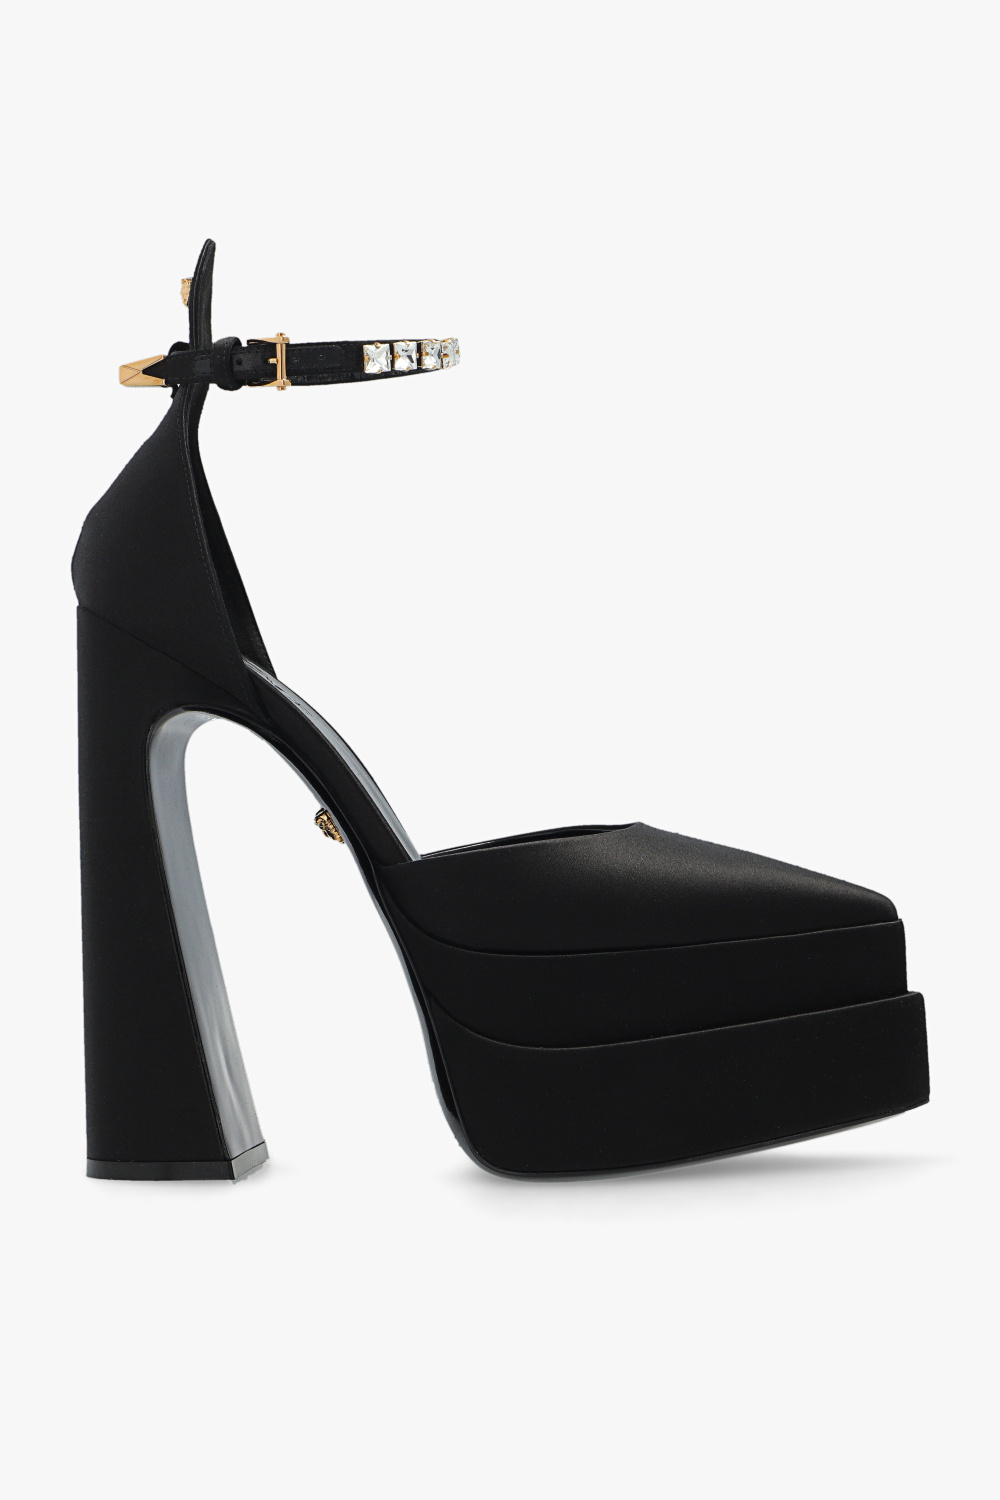 Versace ’Aevitas’ platform pumps